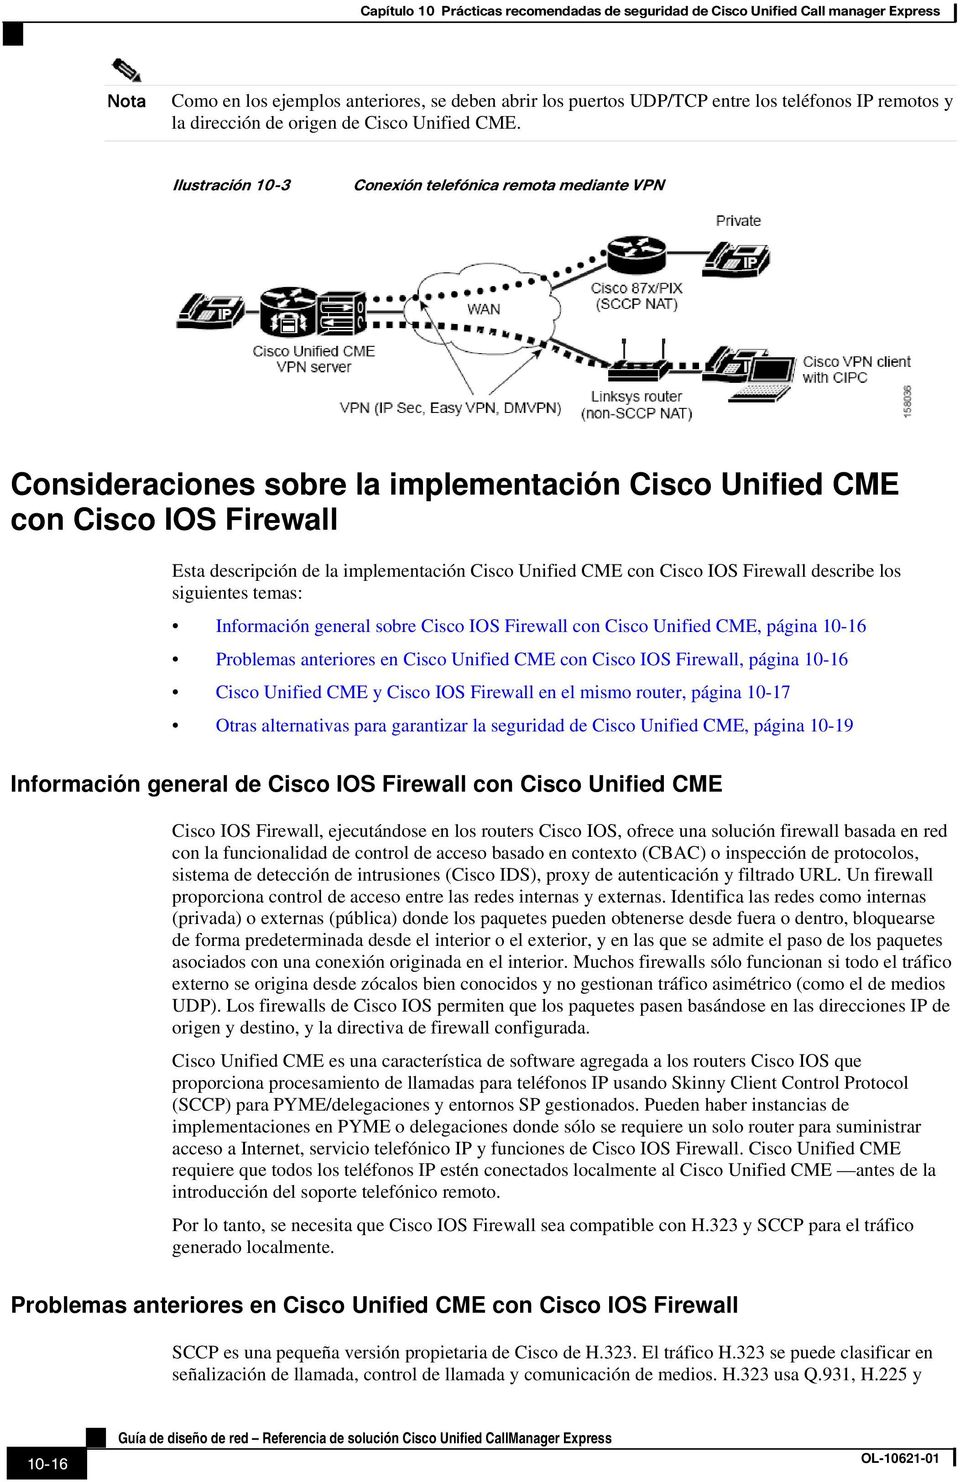 Cisco IOS Firewall describe los siguientes temas: Información general sobre Cisco IOS Firewall con Cisco Unified CME, página 10-16 Problemas anteriores en Cisco Unified CME con Cisco IOS Firewall,